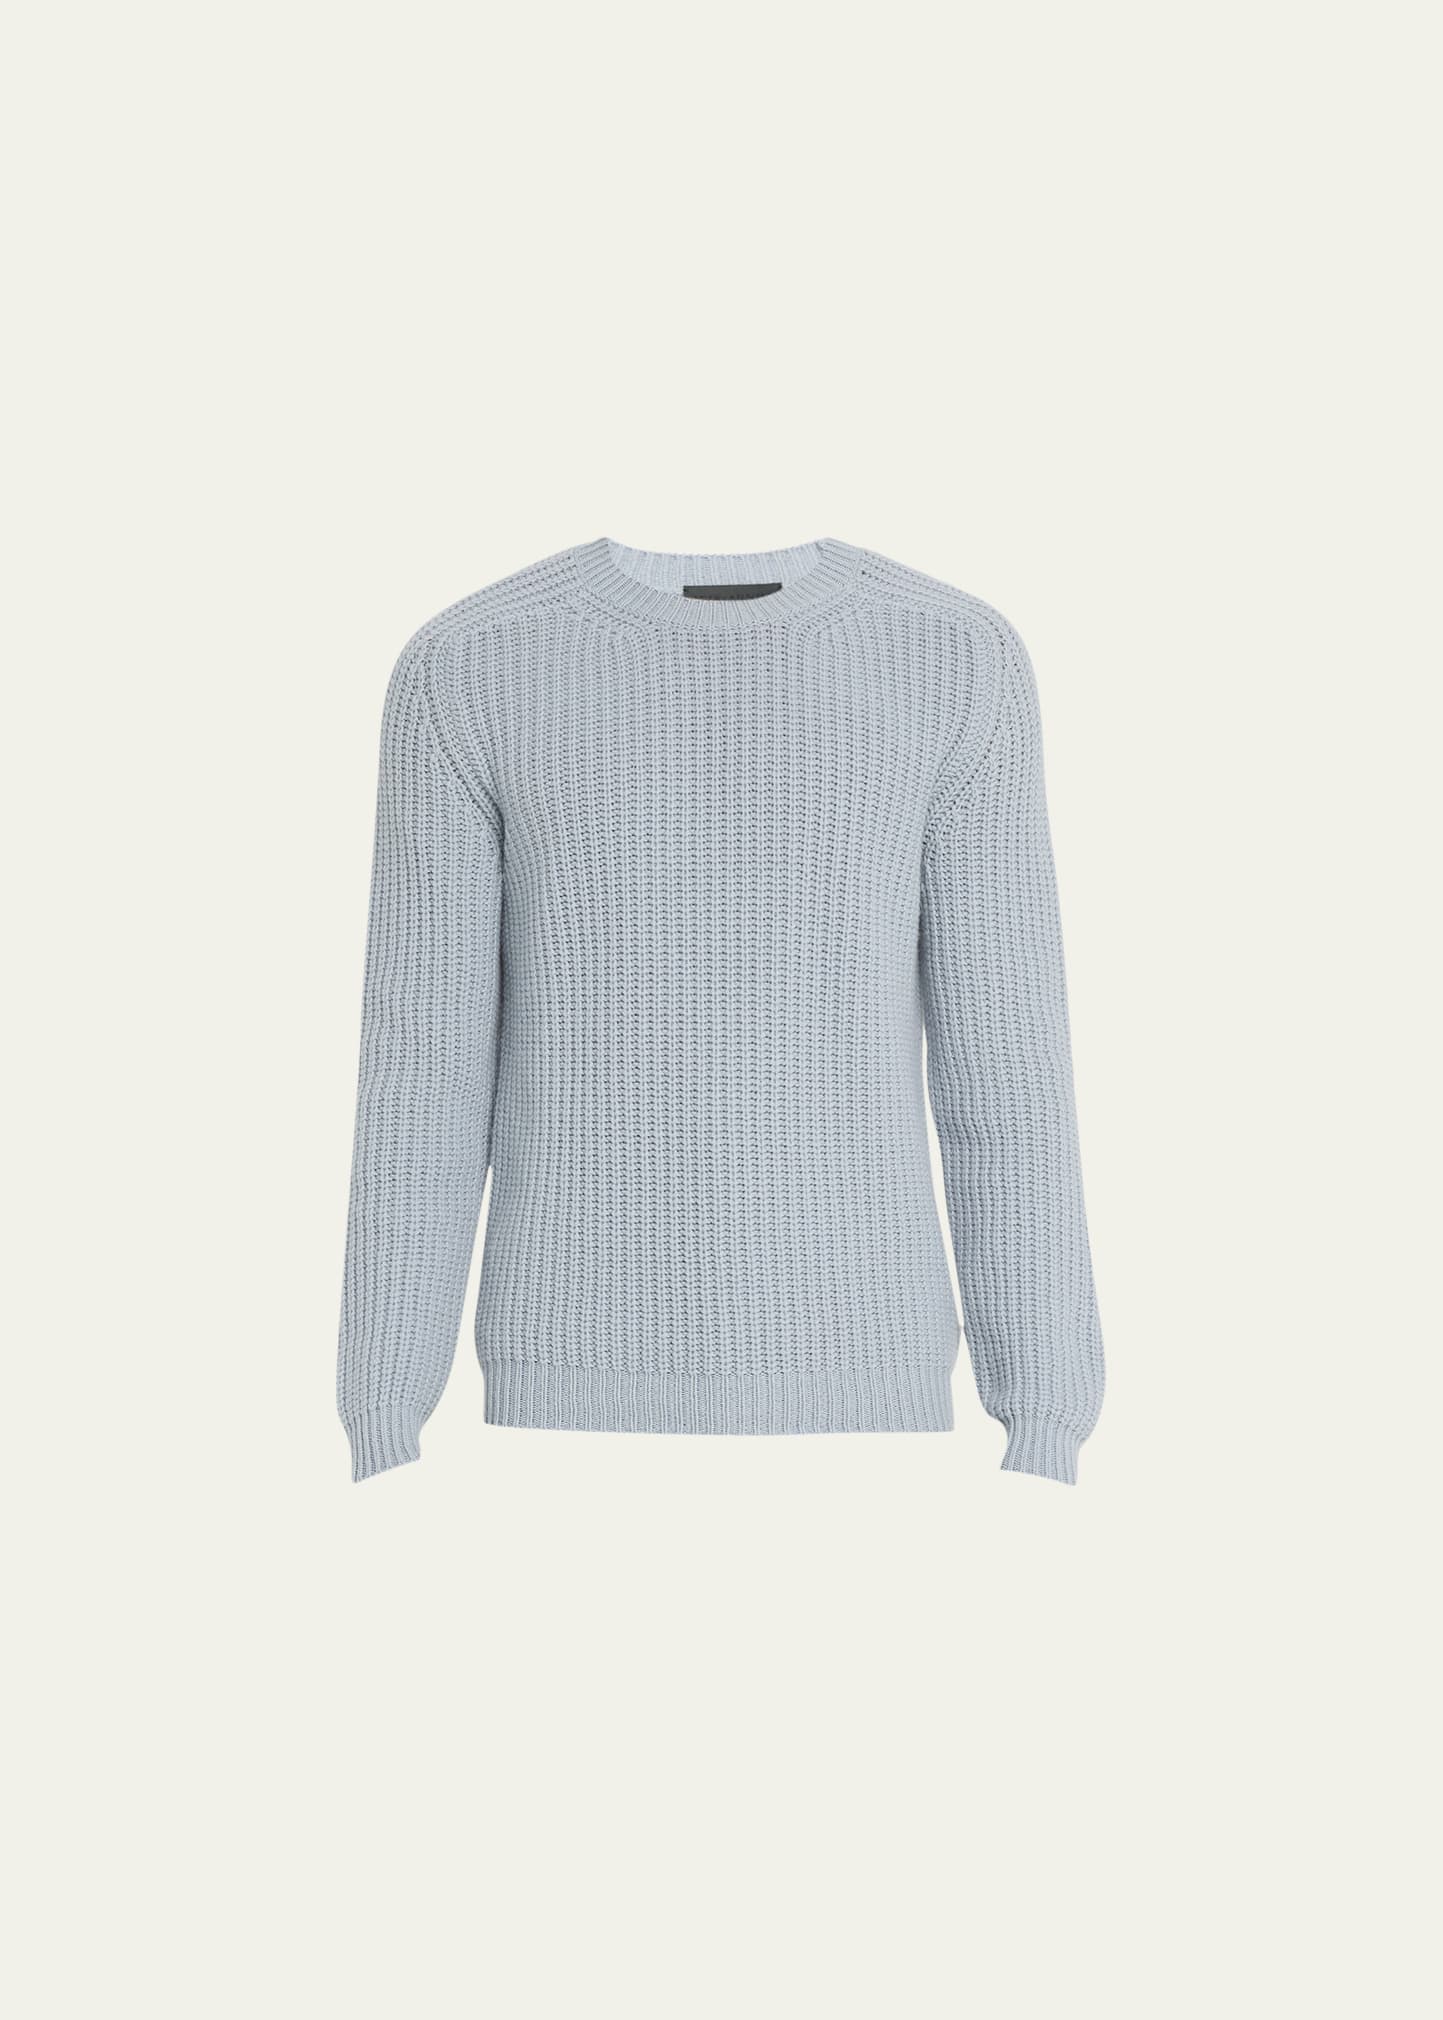 Men's Cashmere Knit Crewneck Sweater